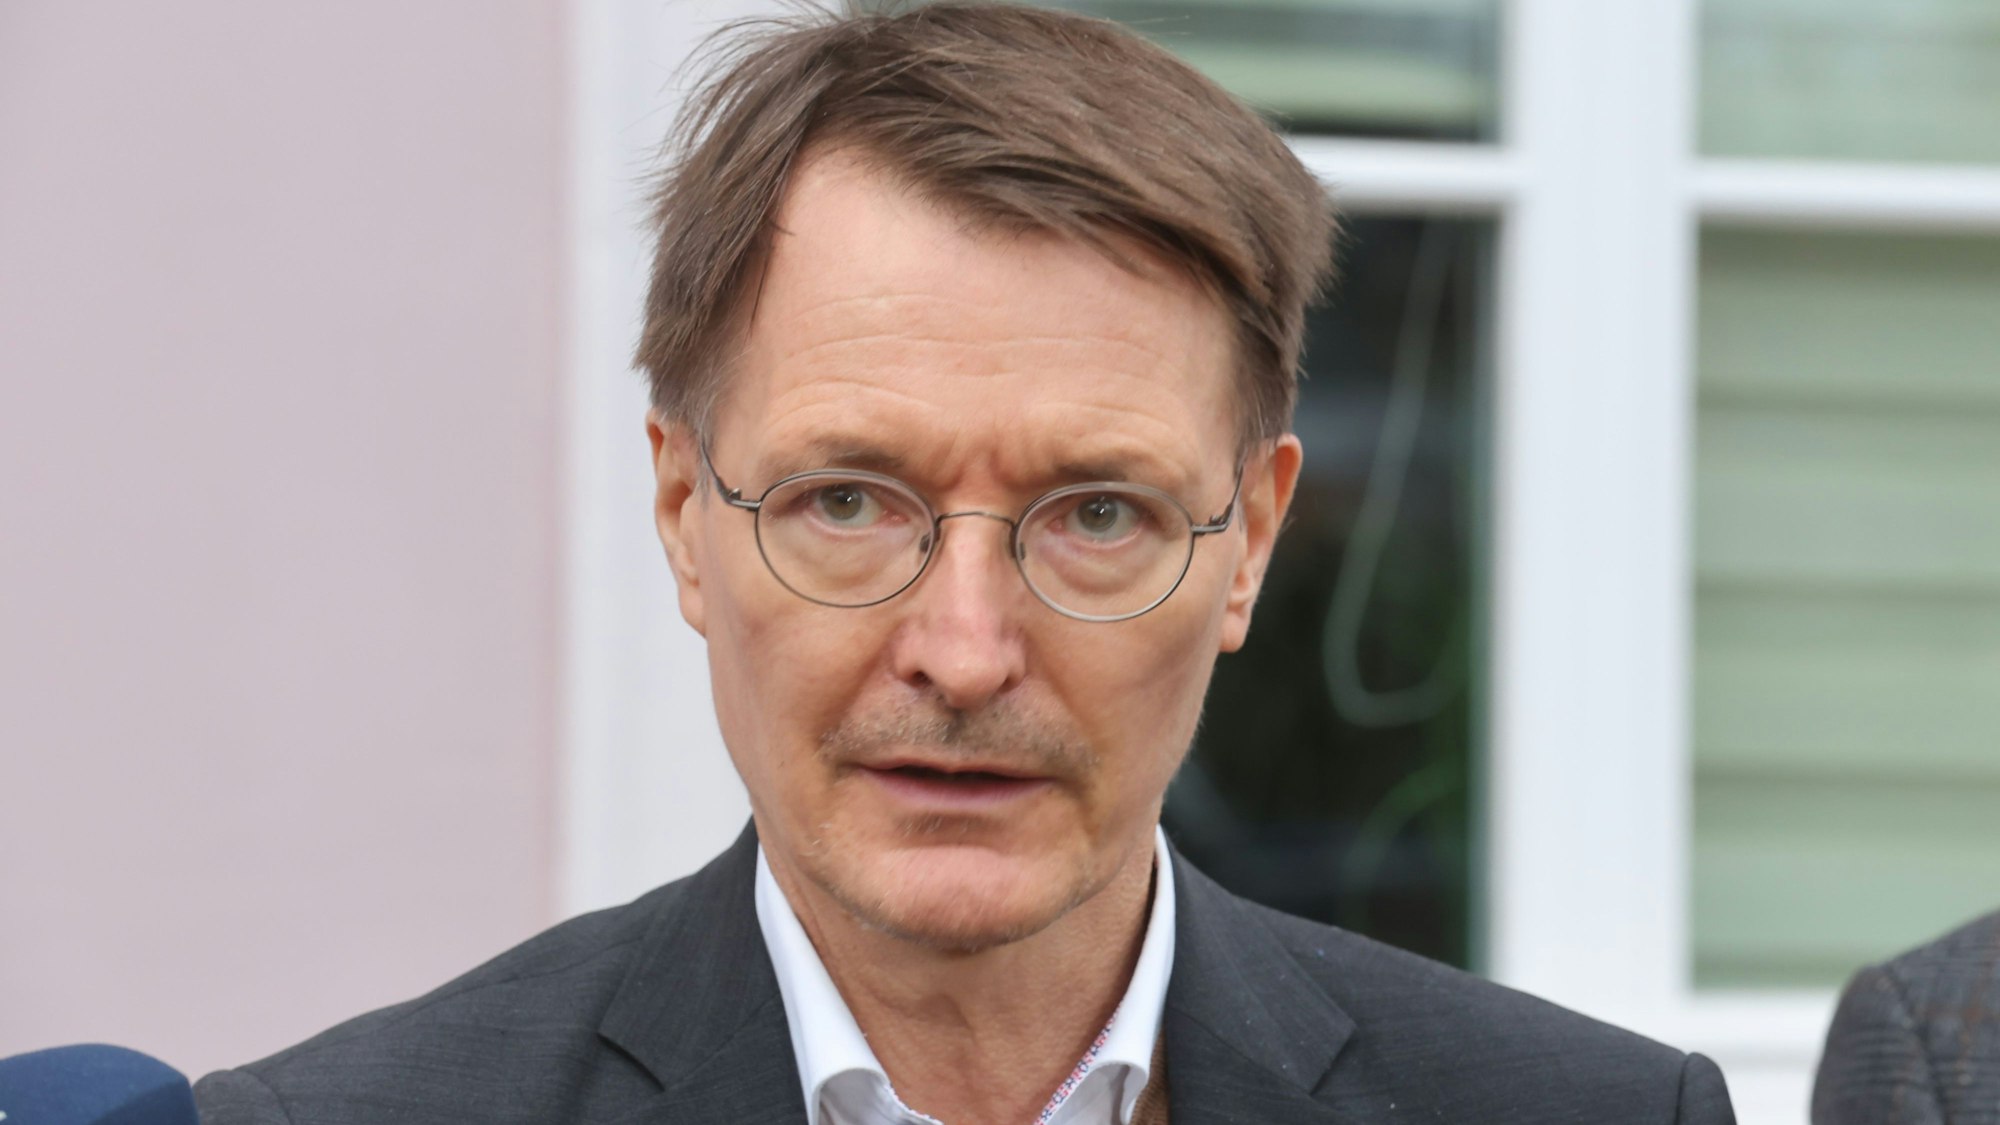 Karl Lauterbach (SPD).